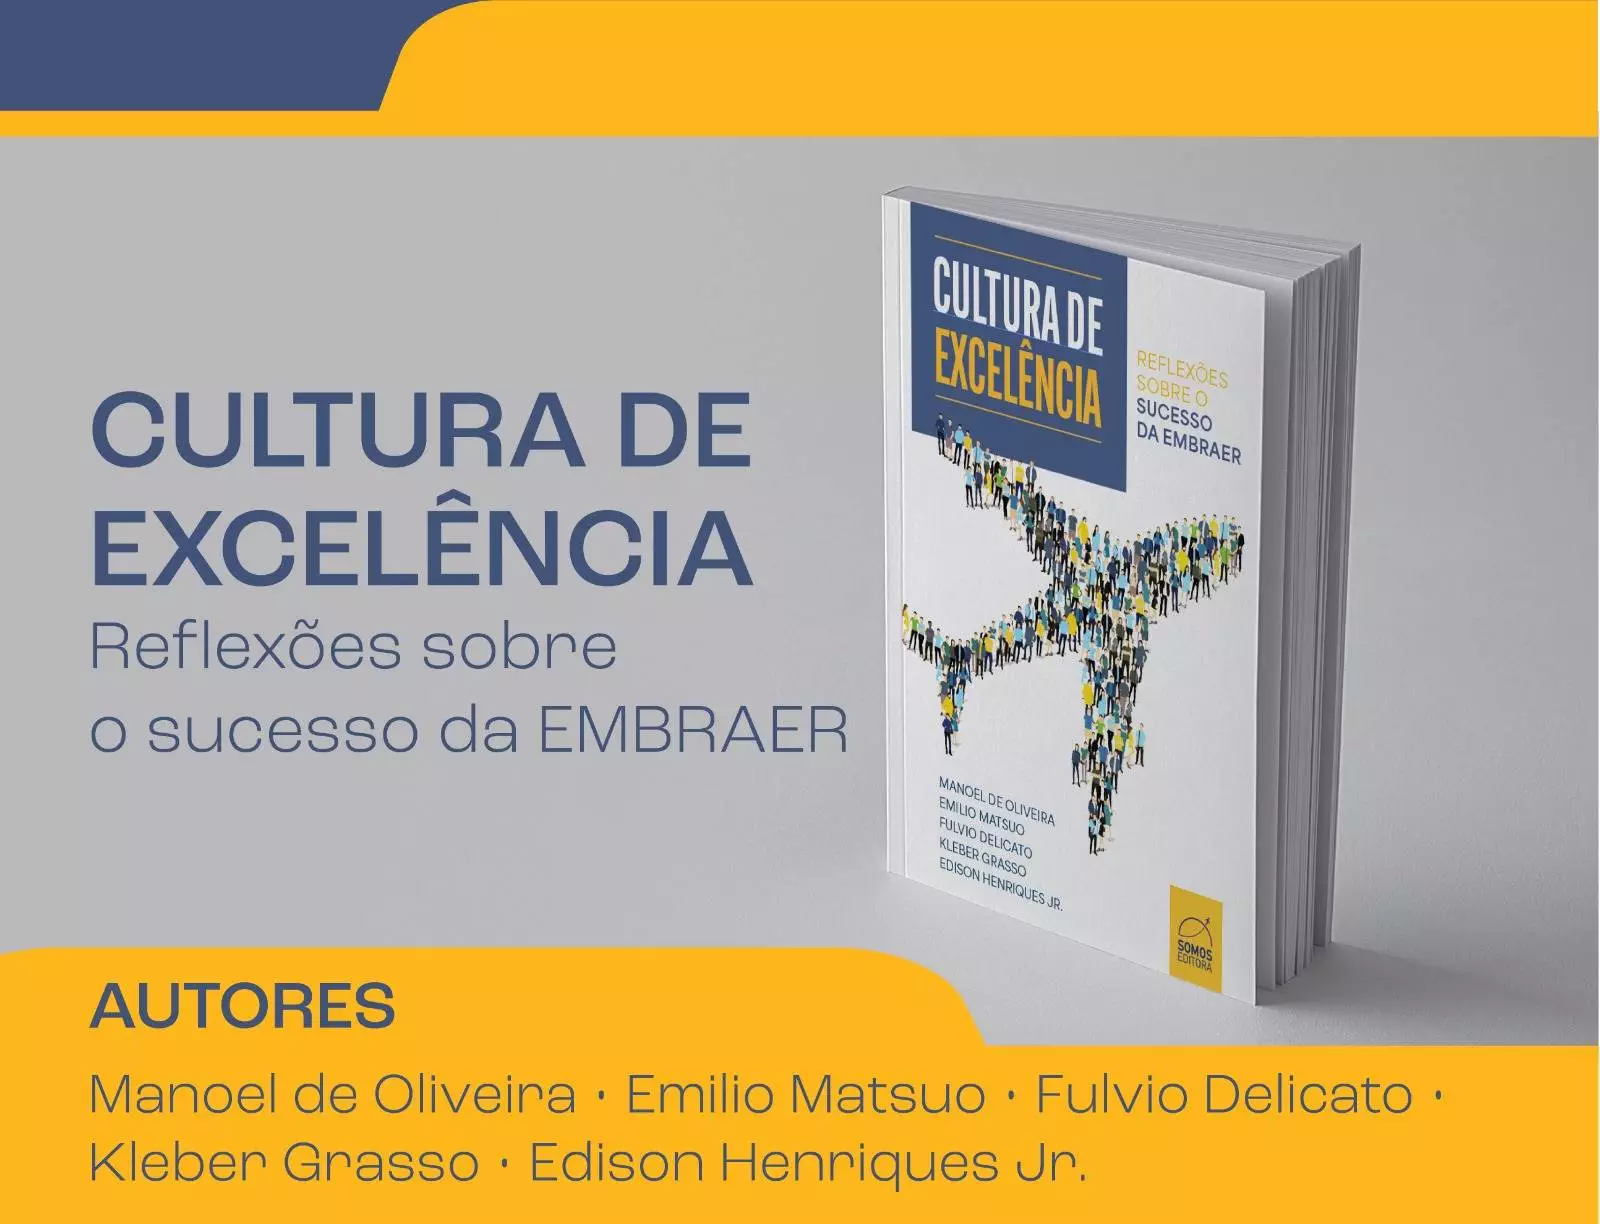 INVOZ e Somos Editora lançam o livro Cultura de Excelência, com a experiência e reflexões de cinco escritores que fizeram parte da história da Embraer